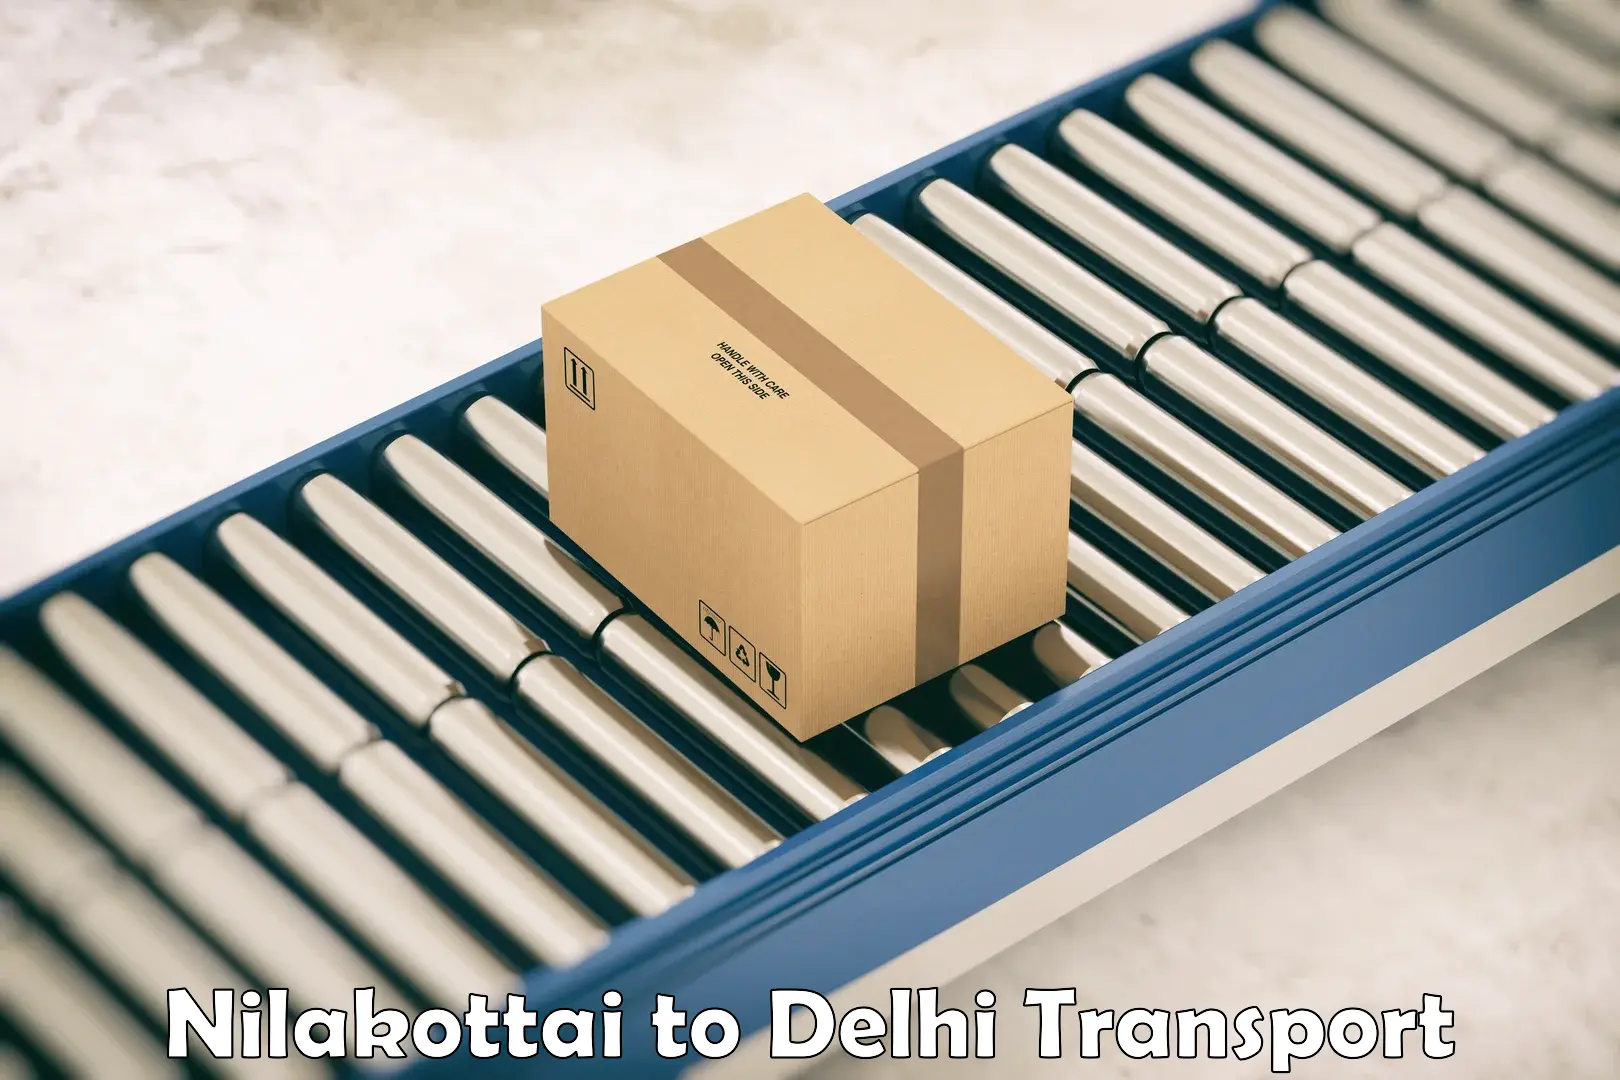 Sending bike to another city Nilakottai to IIT Delhi